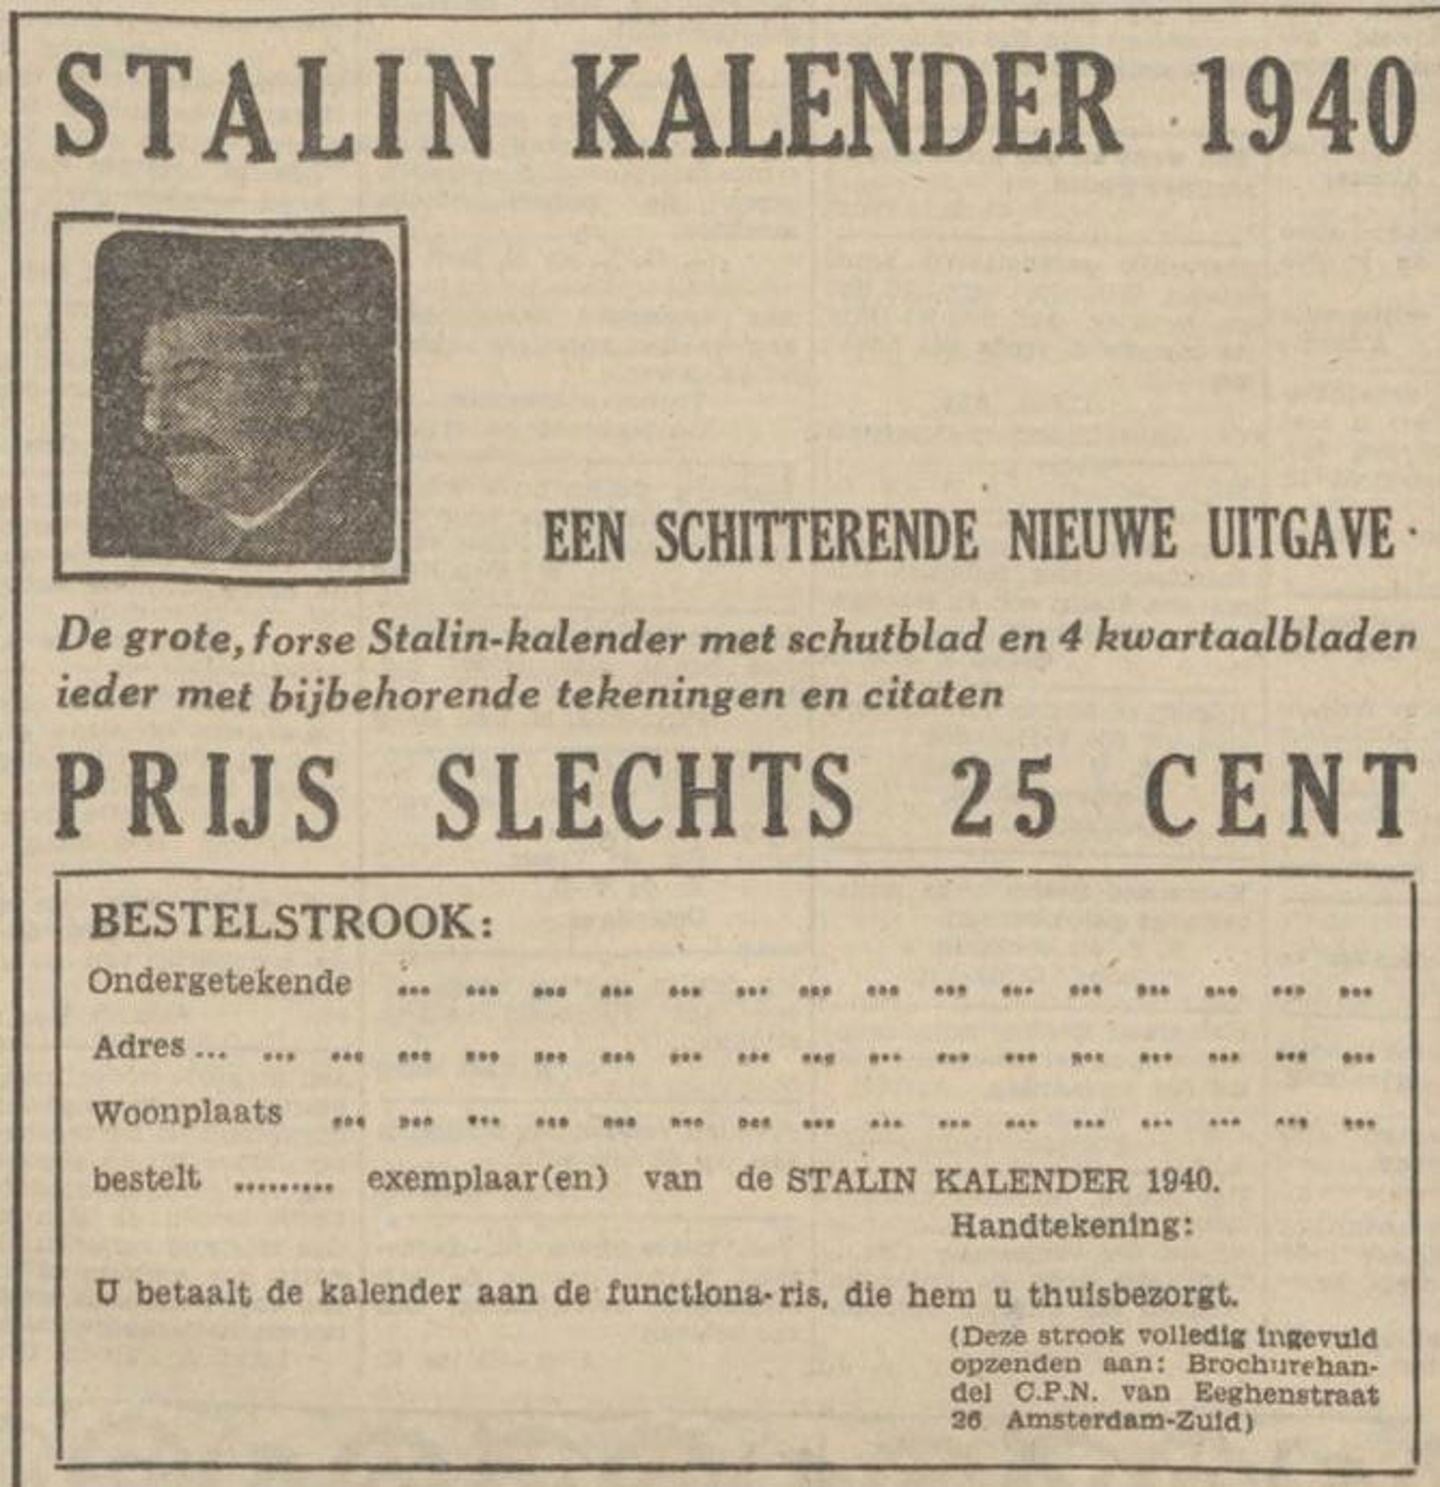 'Prijs slechts 25 cent': advertentie voor de Stalin kalender 1940